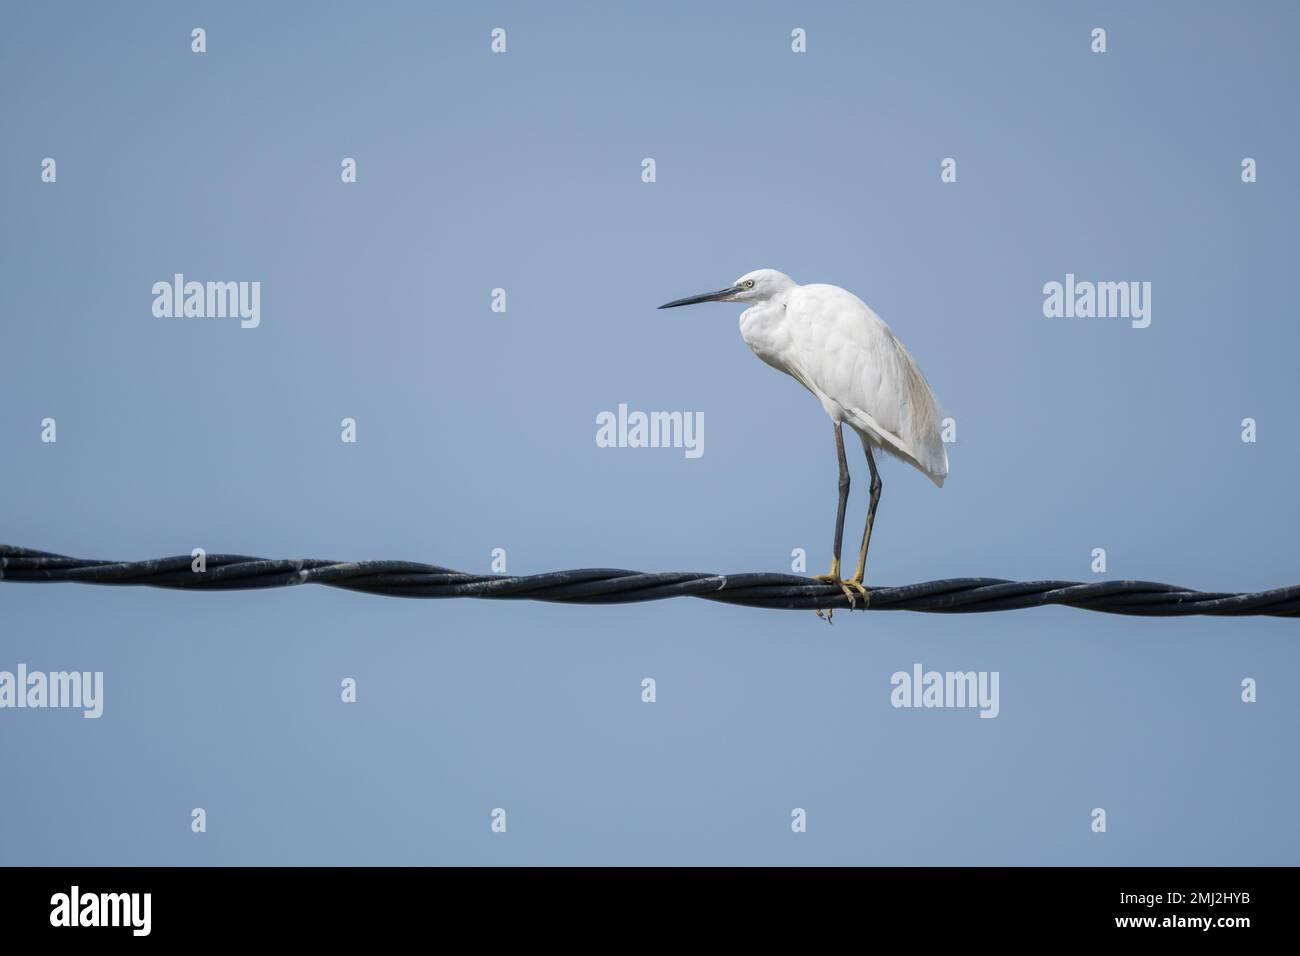 little egret, Egretta garzetta, perched on a electric wire. Ebro delta, Catalonia, Spain Stock Photo